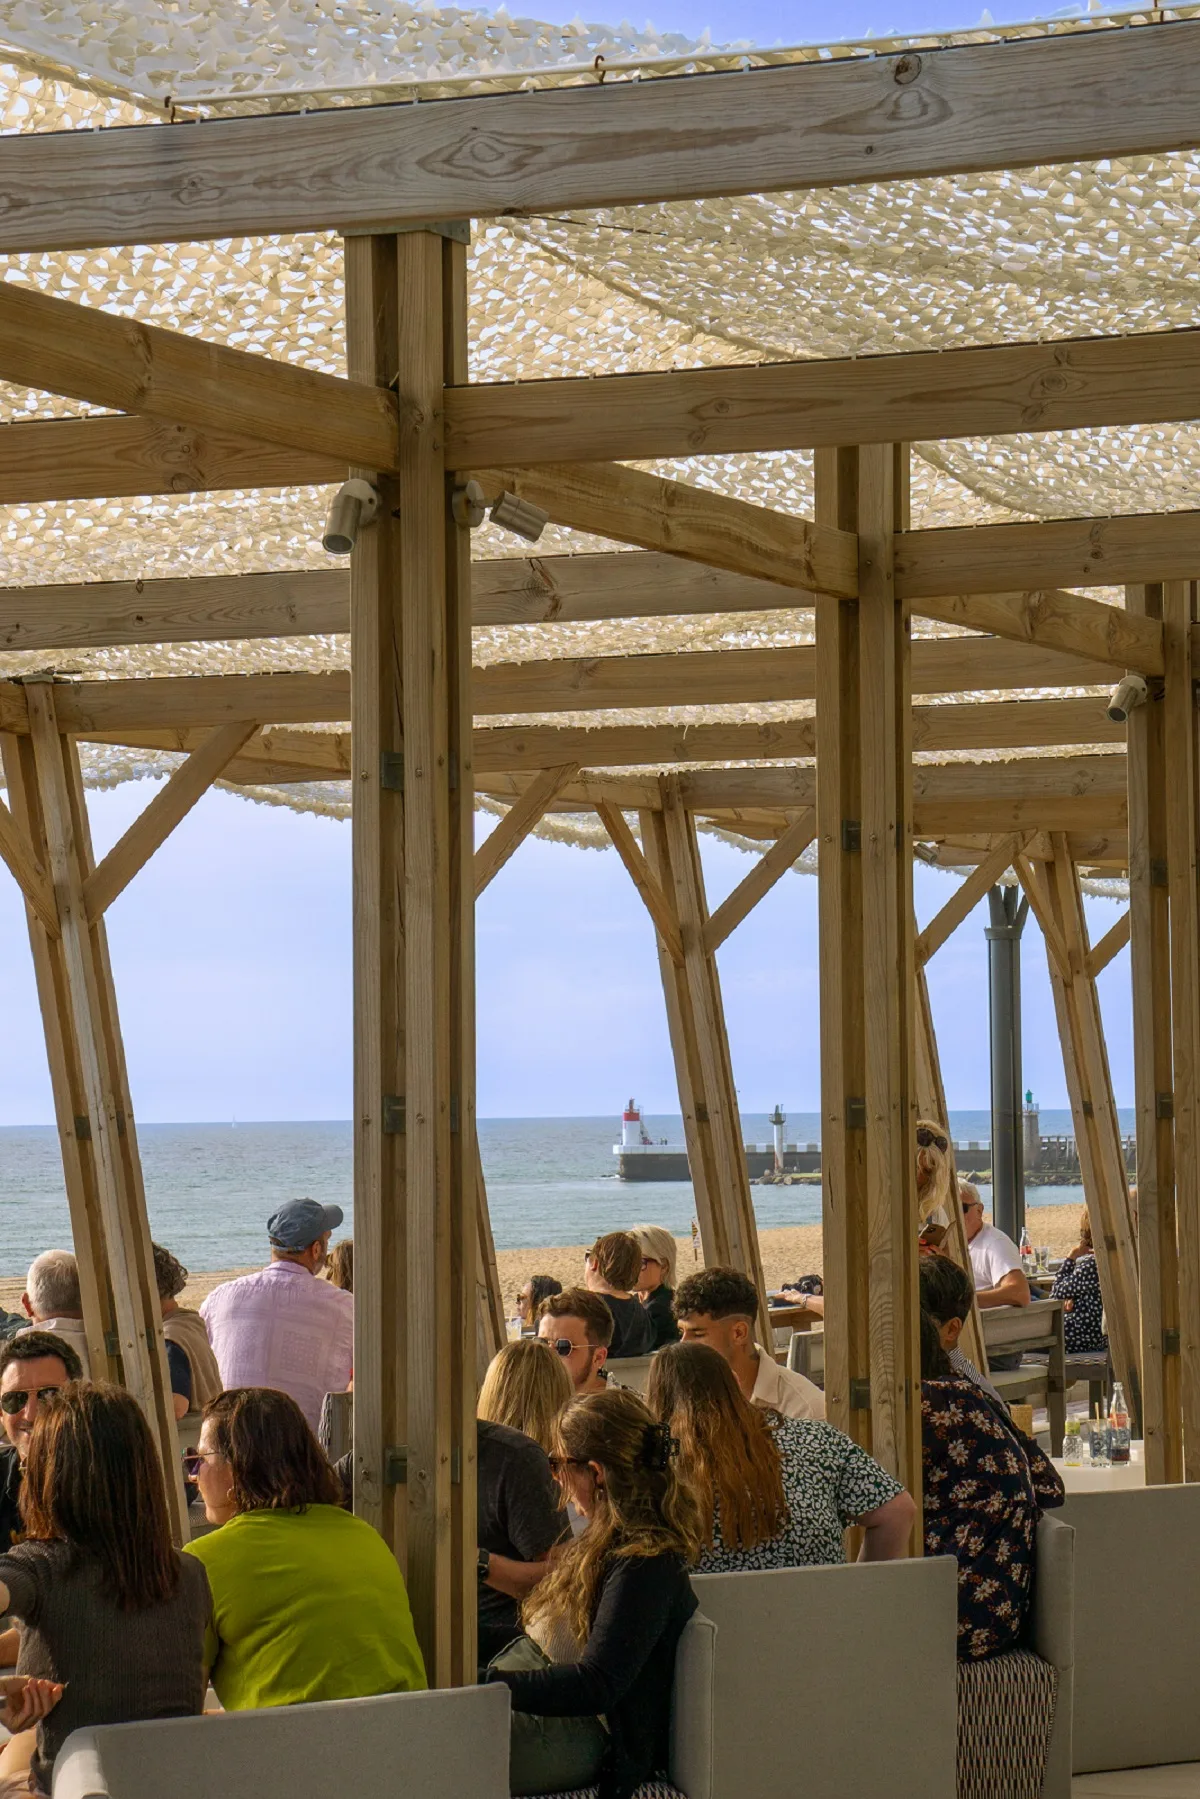 Terrasse de restaurant à la plage, Capbreton